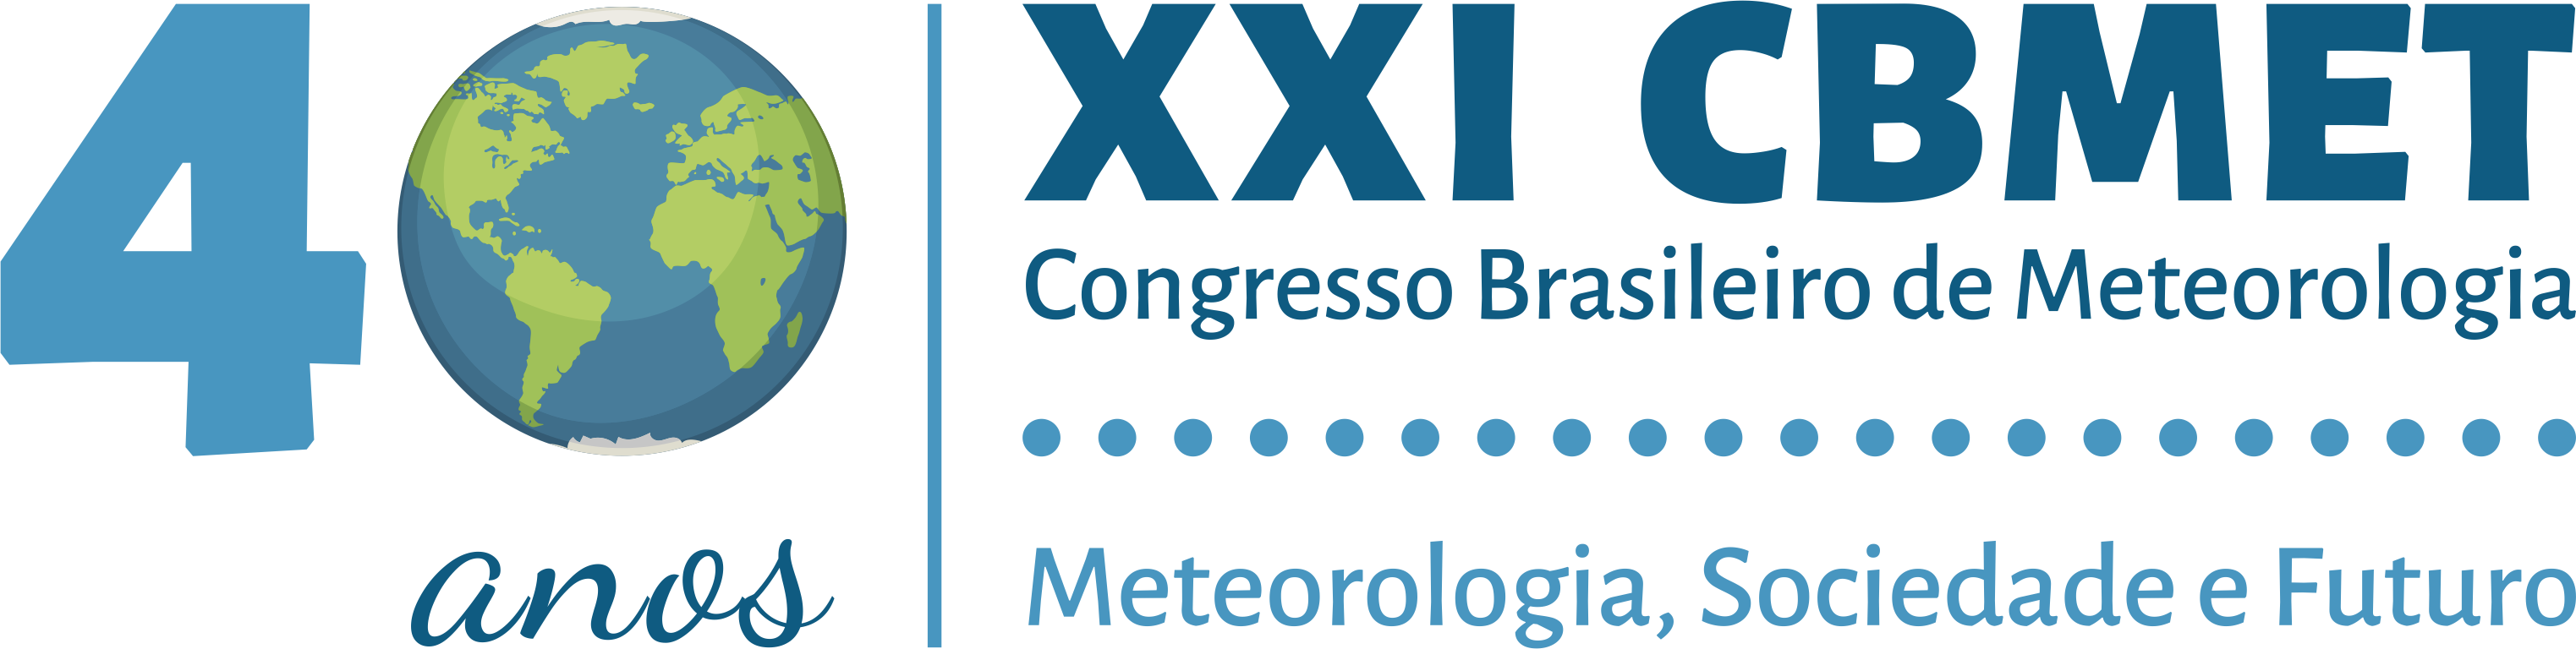 XXI Congresso Brasileiro de Meteorologia (CBMET)